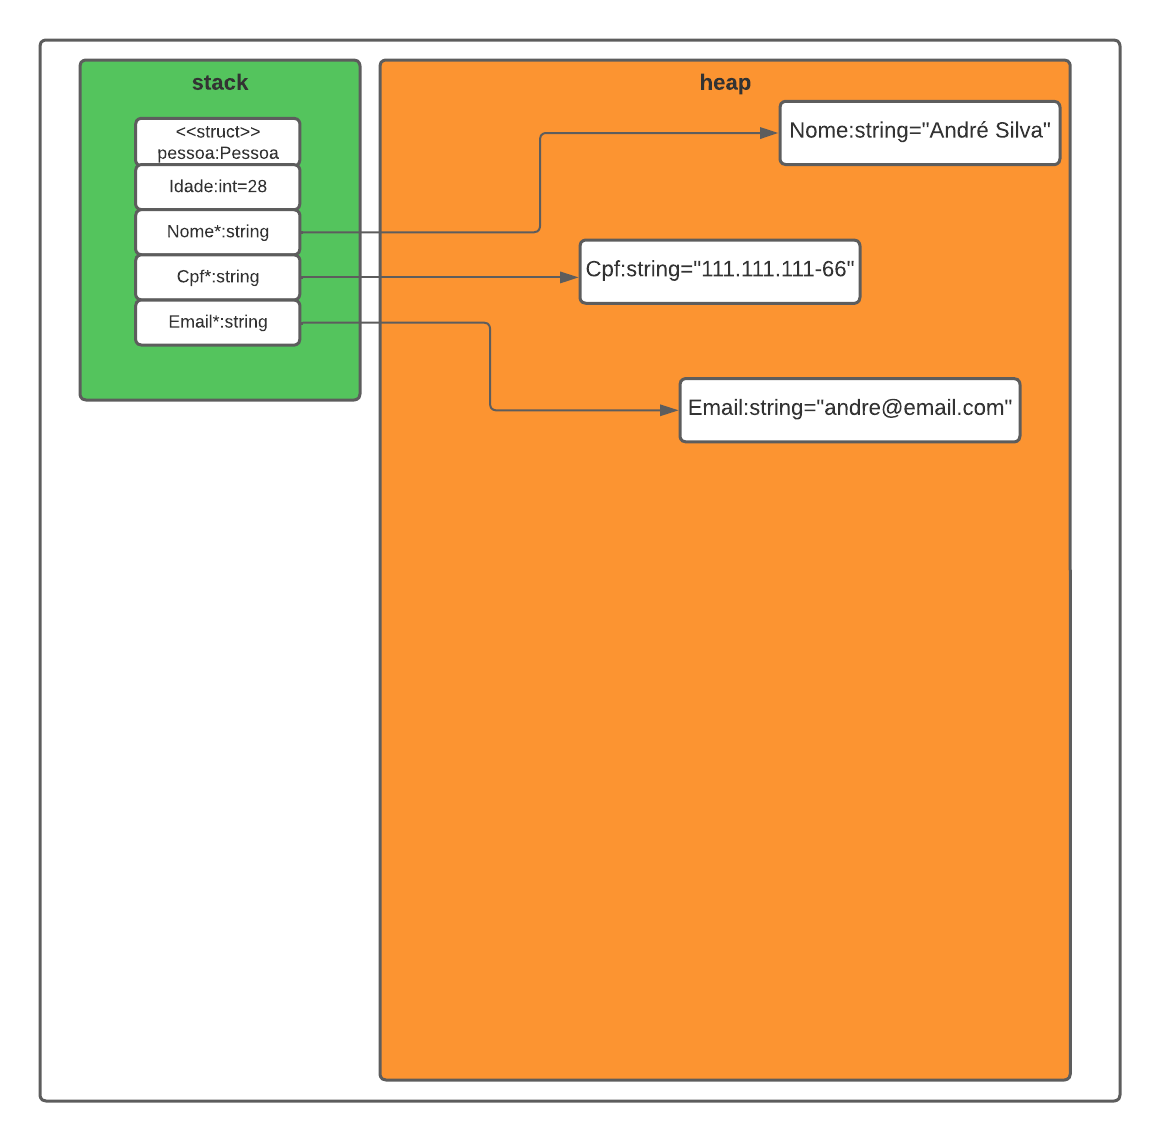 Na imagem é apresentado um retângulo na cor verde representando a memória stack e em seu interior um retângulo compartimentalizado definindo os campos de uma struct `Pessoa` e com ponteiros que apontam para o retângulo laranja que representa a memória `heap` que contém 3 objetos do tipo string.